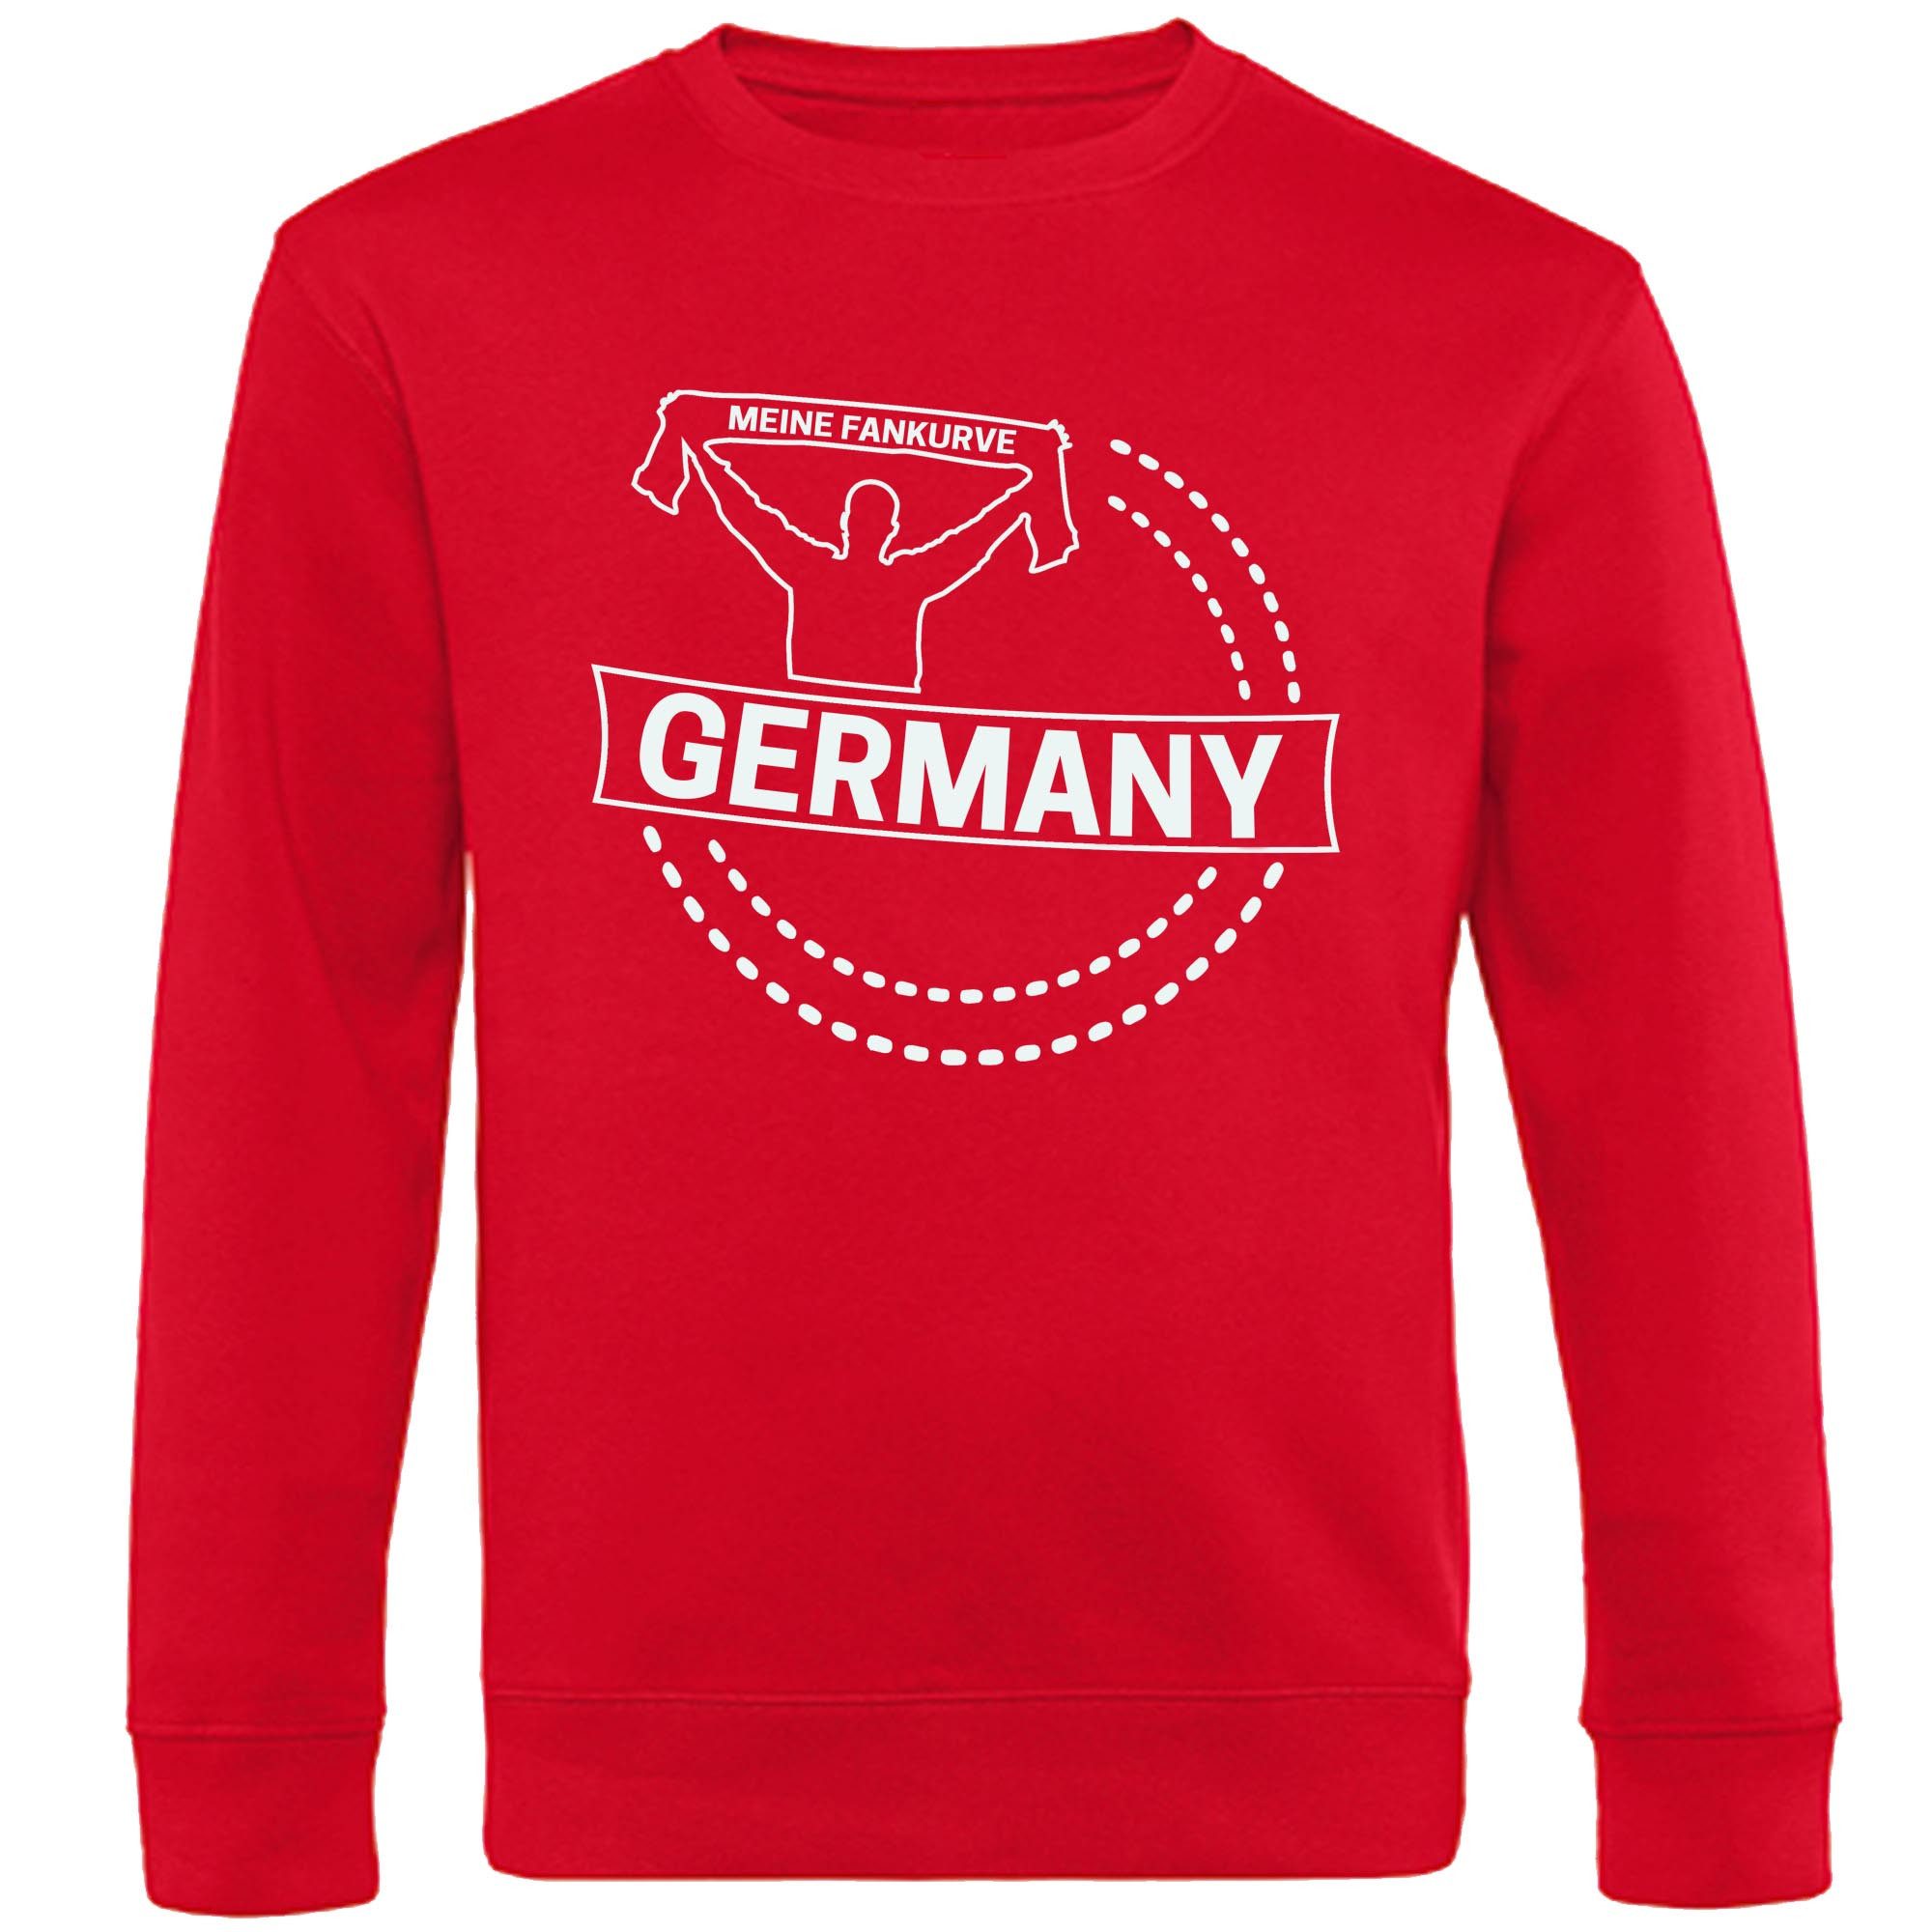 multifanshop Sweatshirt Germany - Meine Fankurve - Pullover